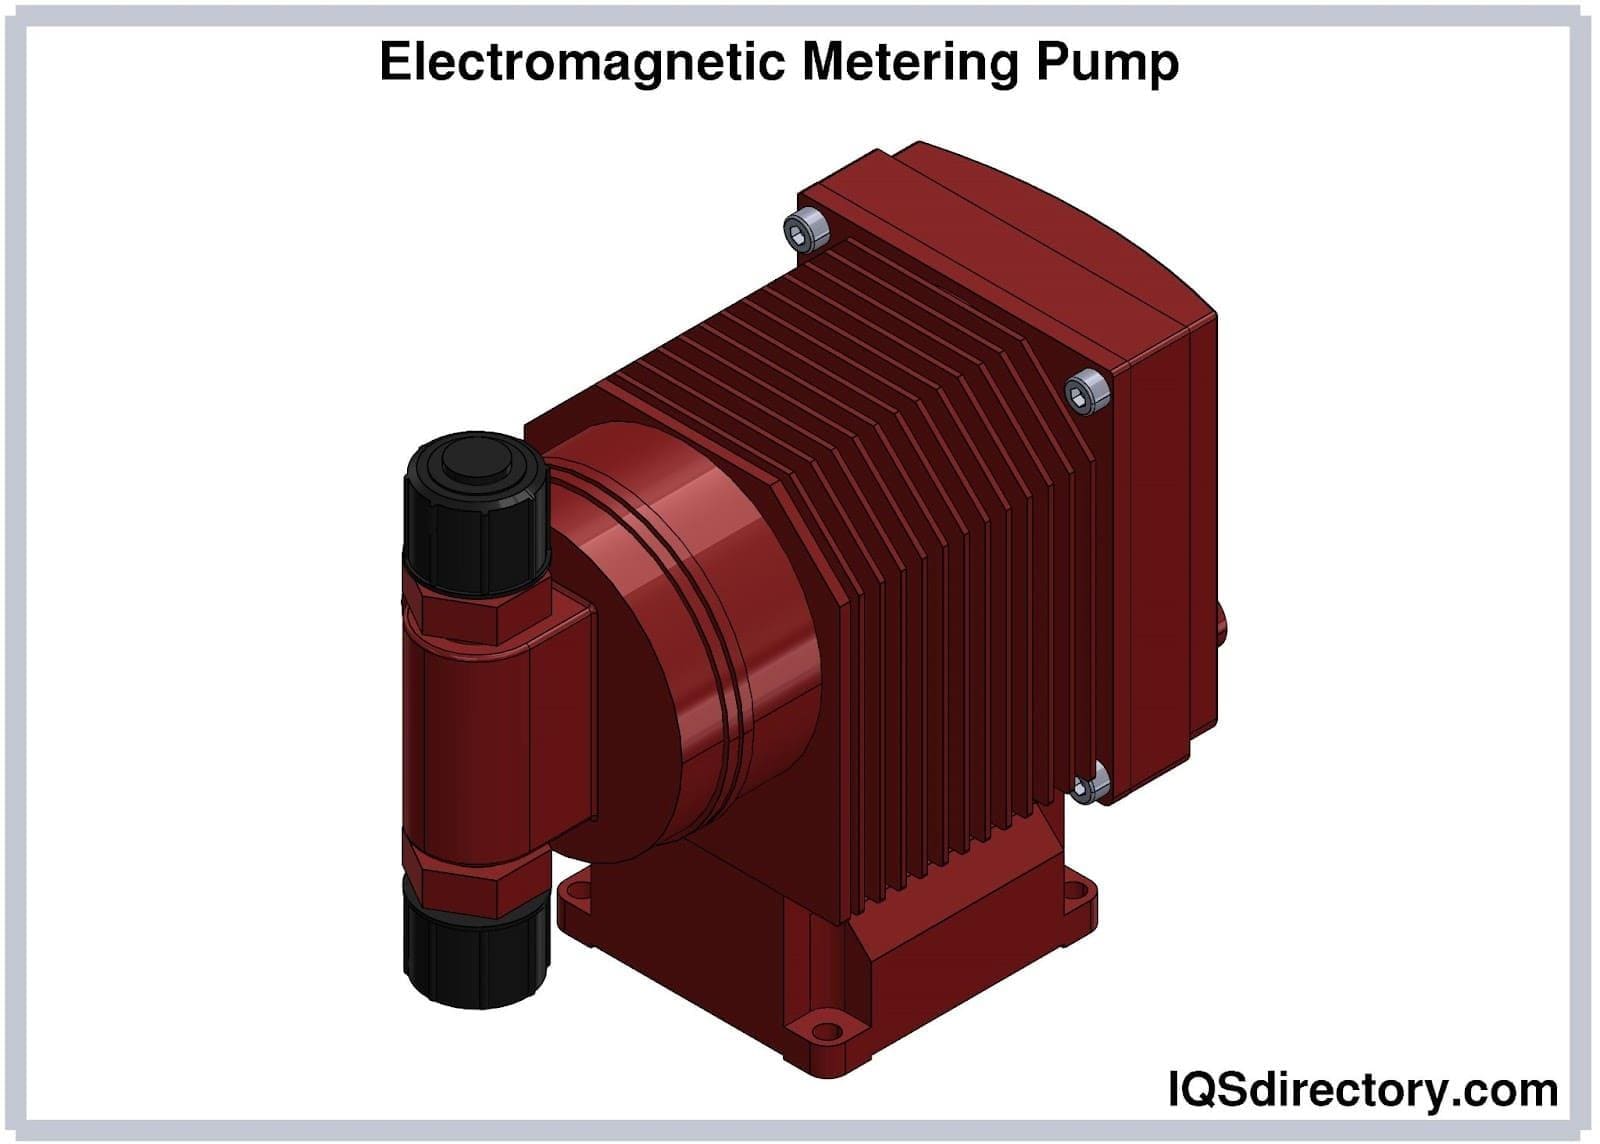 Electromagnetic Metering Pump